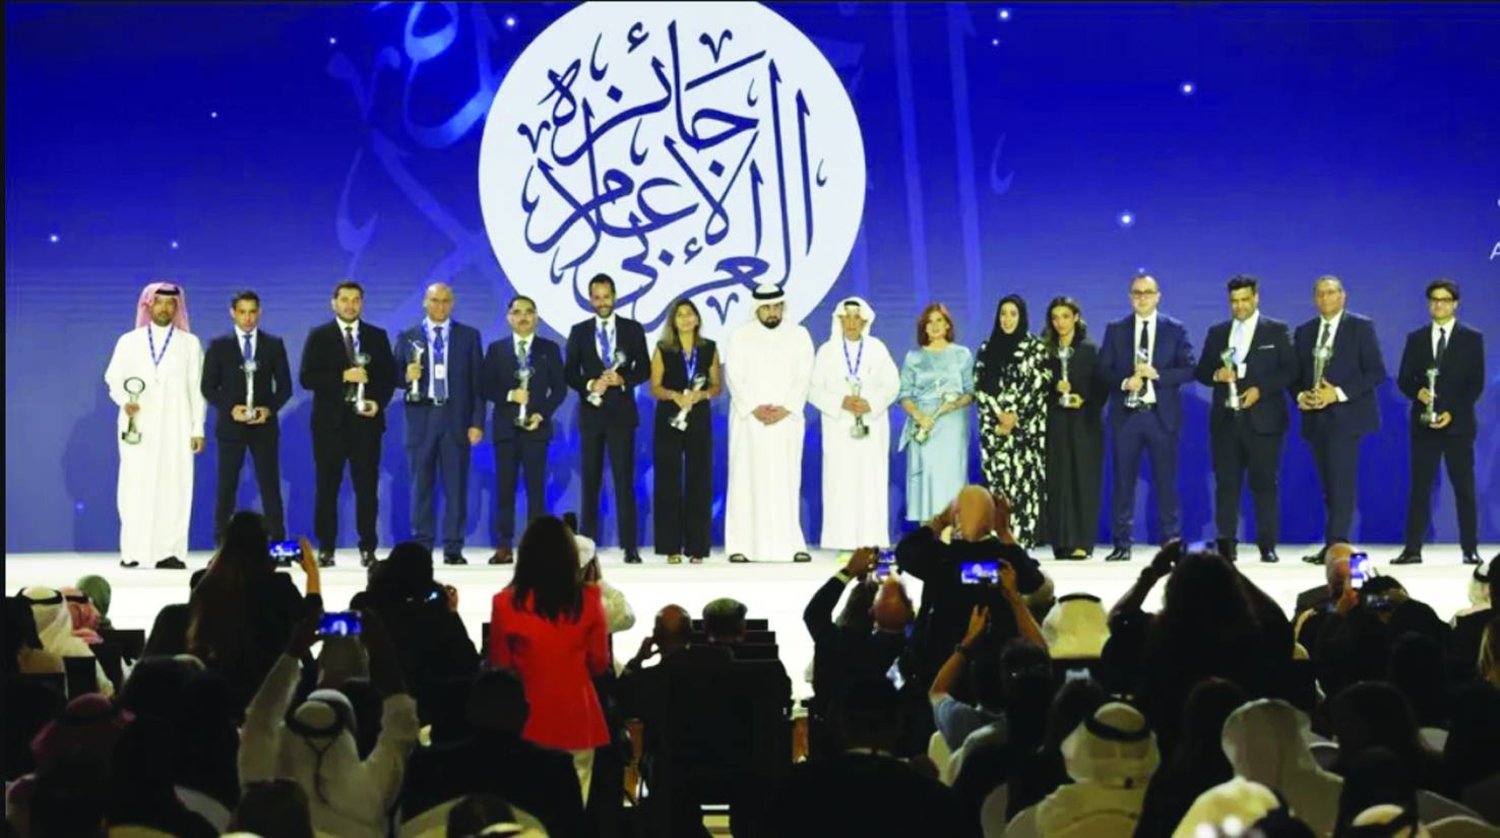 
الشيخ أحمد بن محمد بن راشد آل مكتوم مع الفائزين بجوائز الصحافة العربية (الشرق الأوسط)
